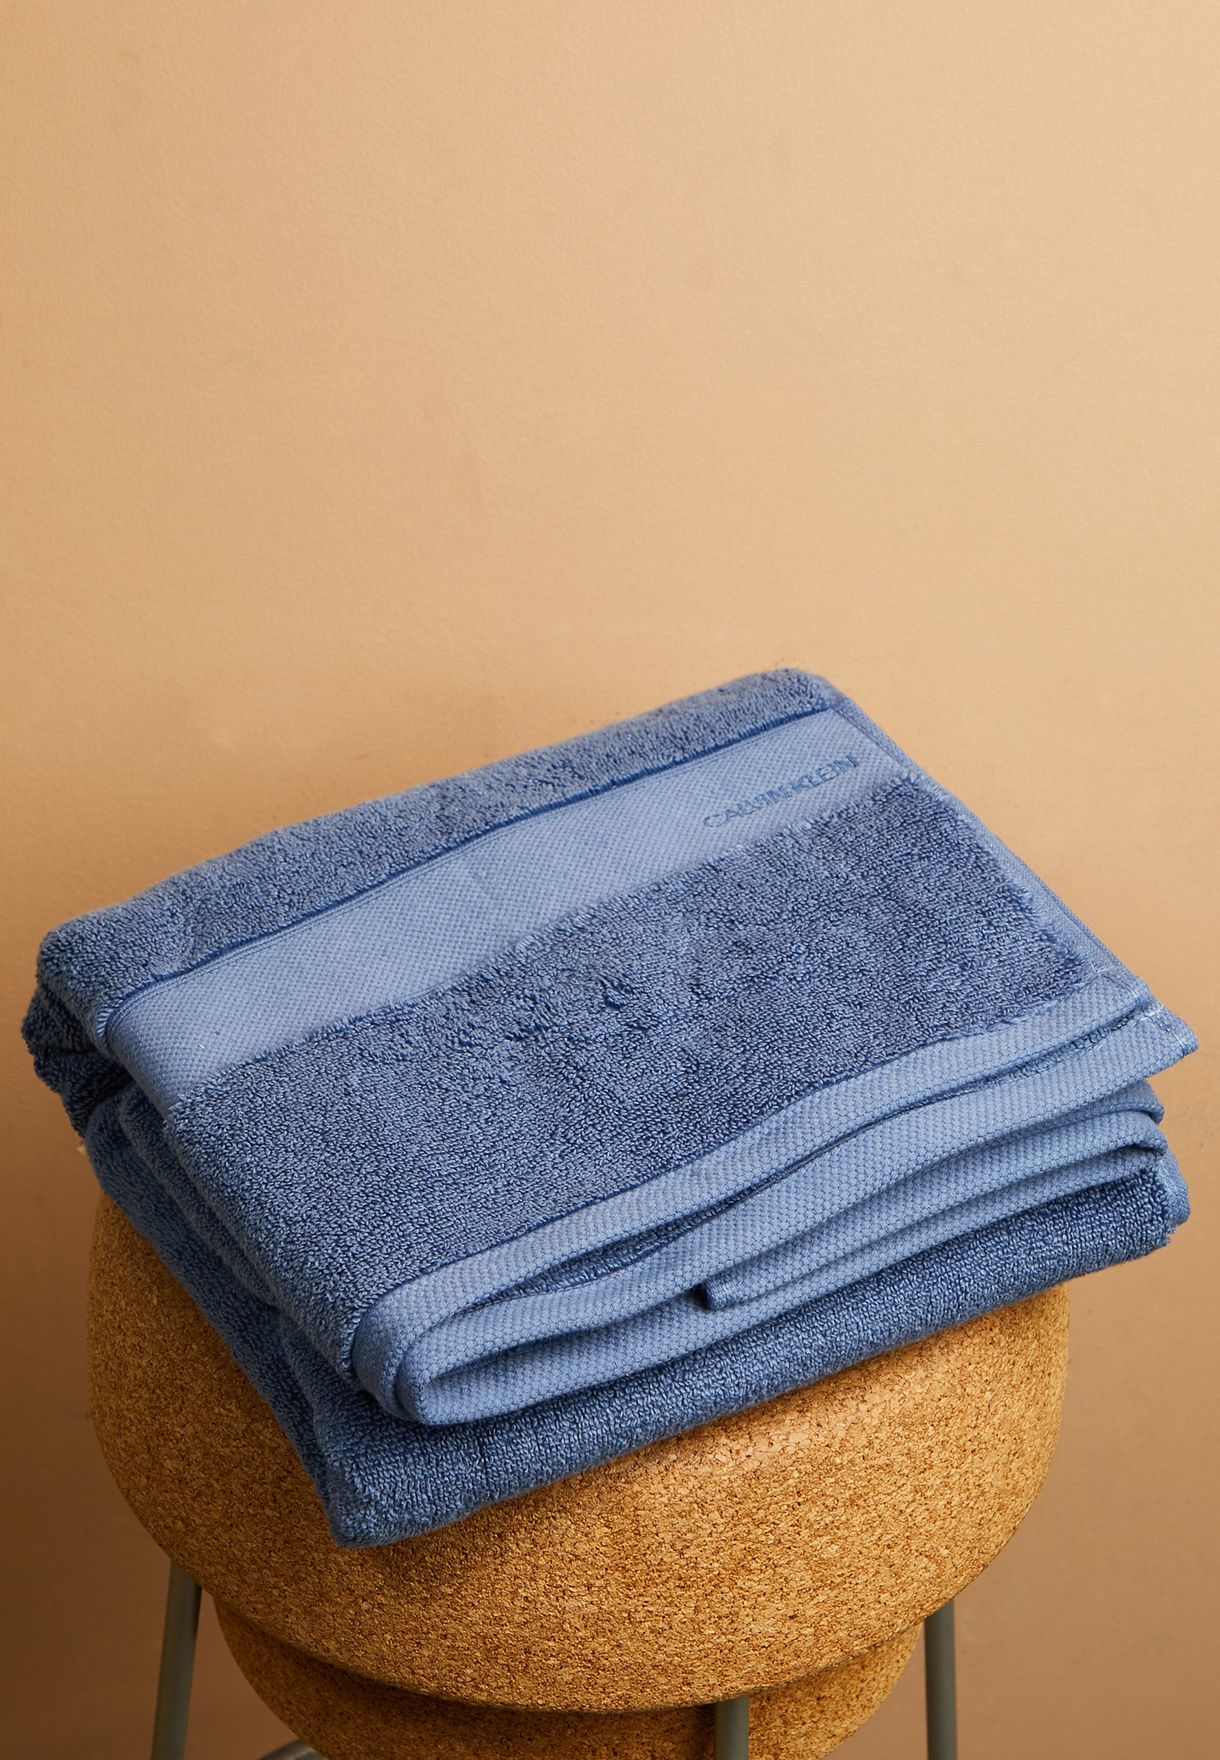 Tracy Dusty Blue Bath Towel 70X140Cm